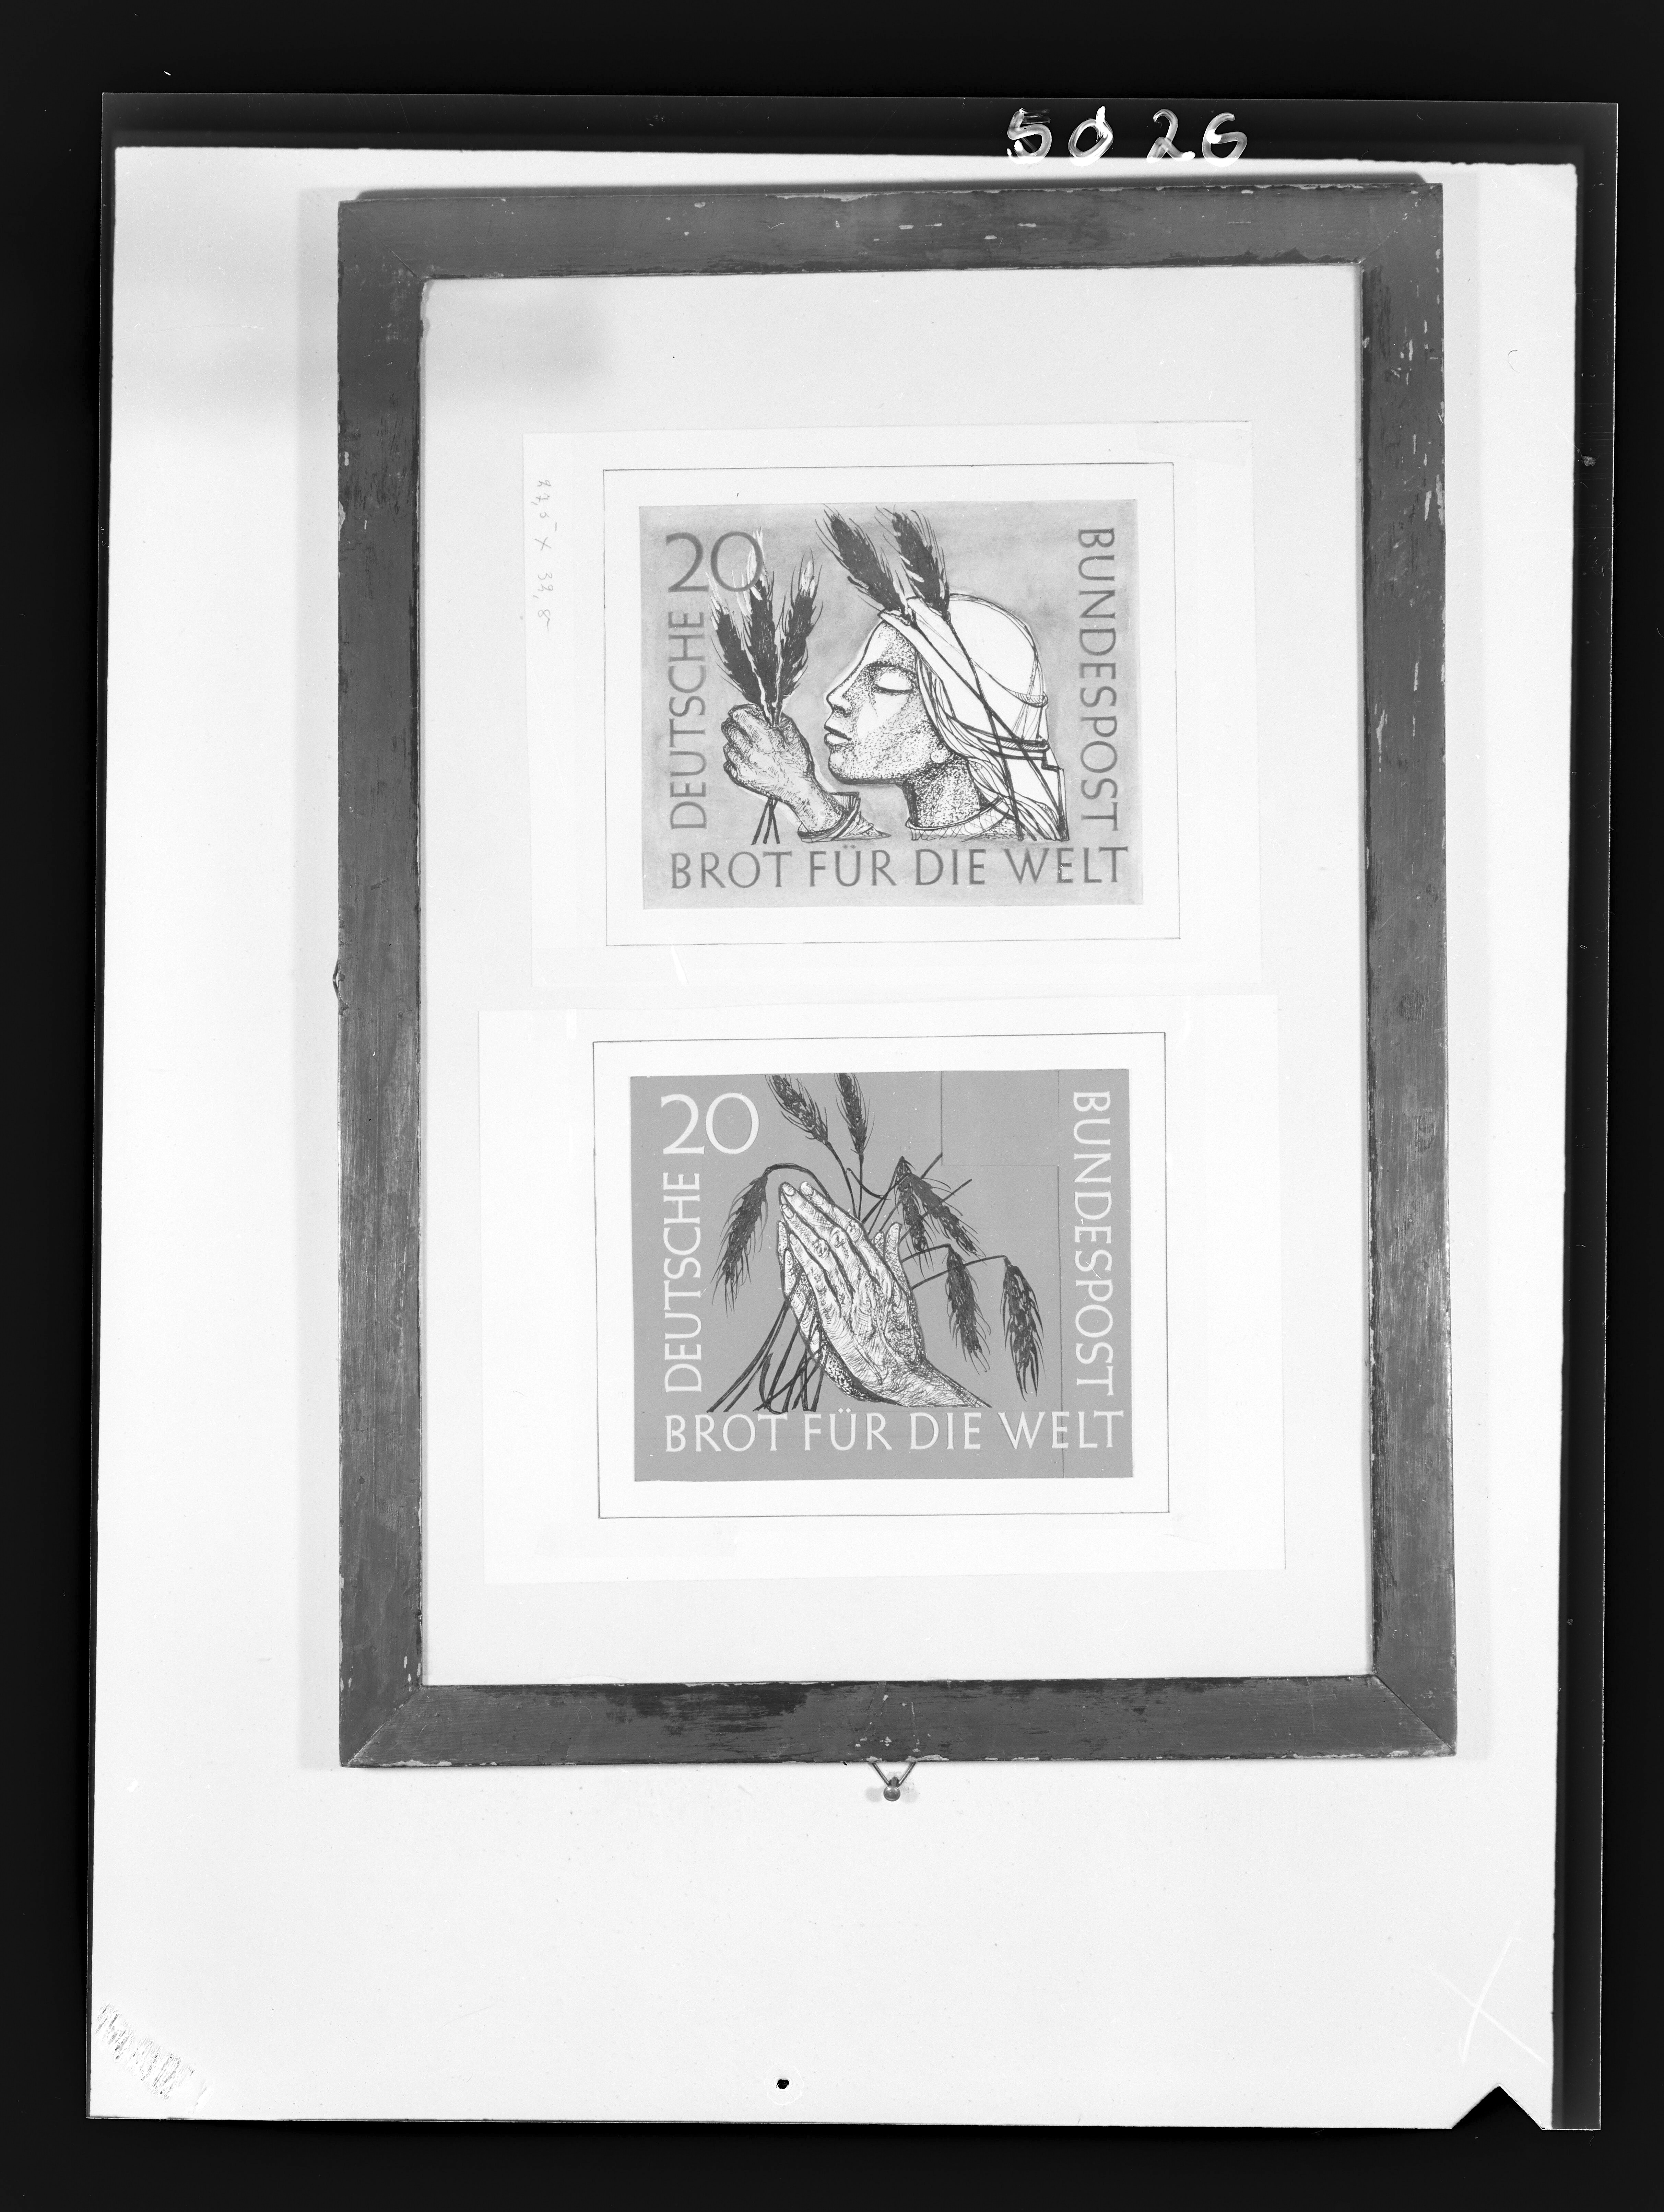 Fotografie Briefmarken von Eva Schwimmer (1901-1986) (2) (Gerda Schimpf Fotoarchiv CC BY)